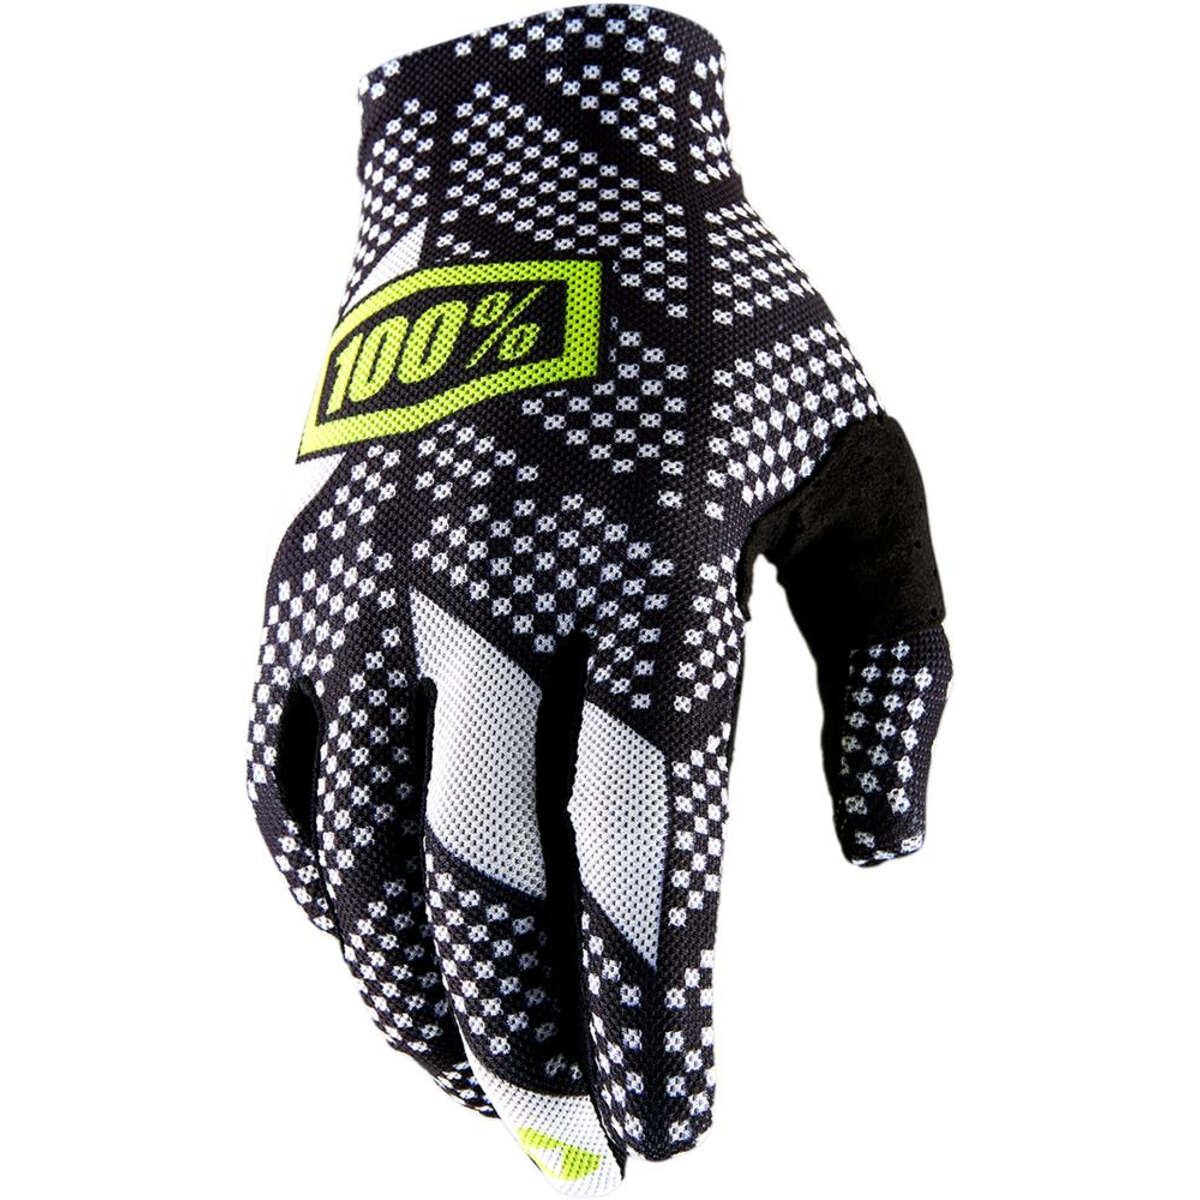 100% Bike Gloves Celium 2 Code Black/White